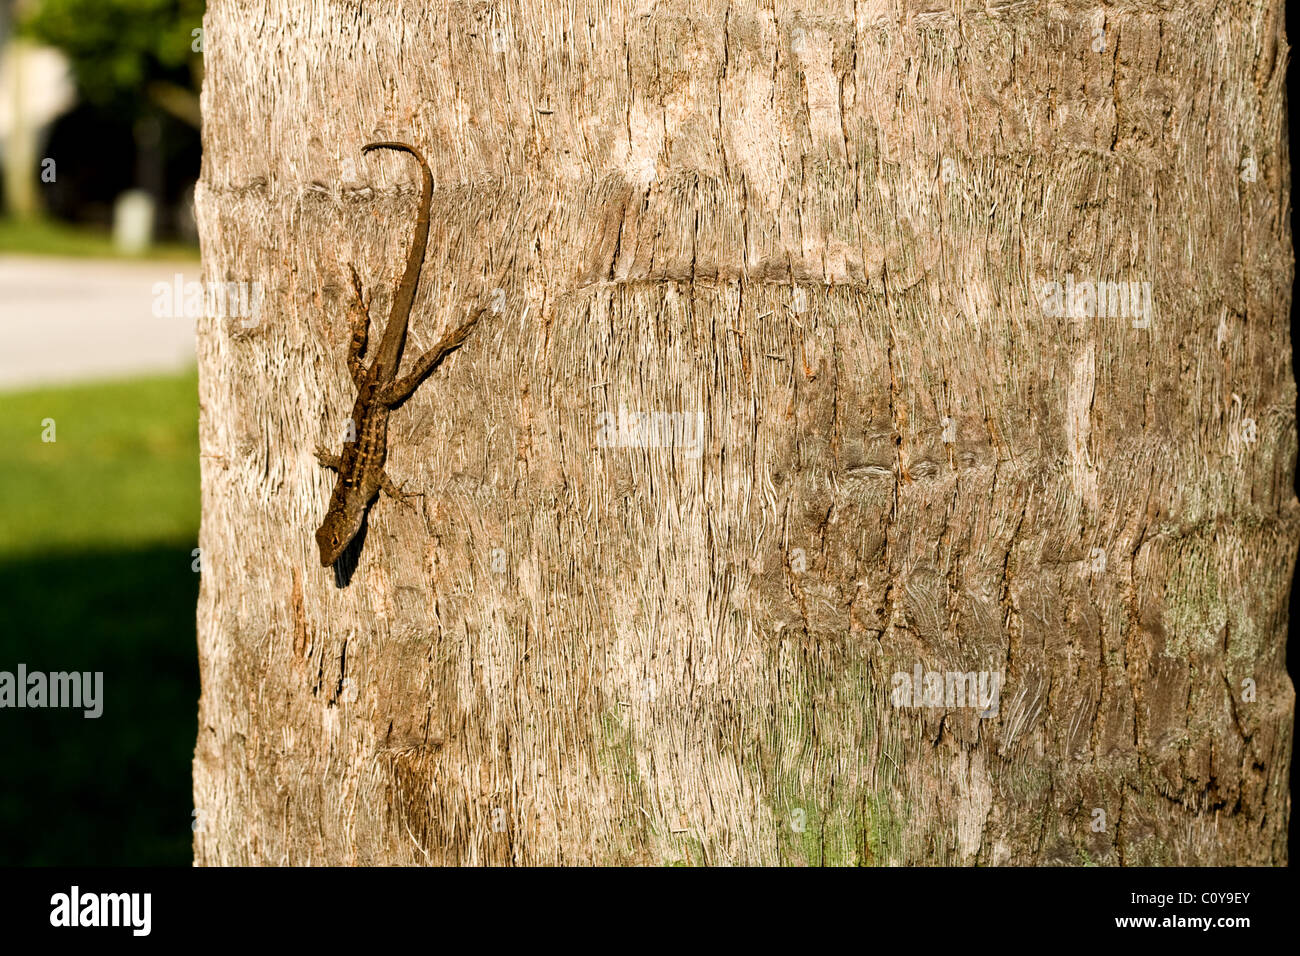 Pequeña lagartija sobre el tronco de un árbol Foto de stock